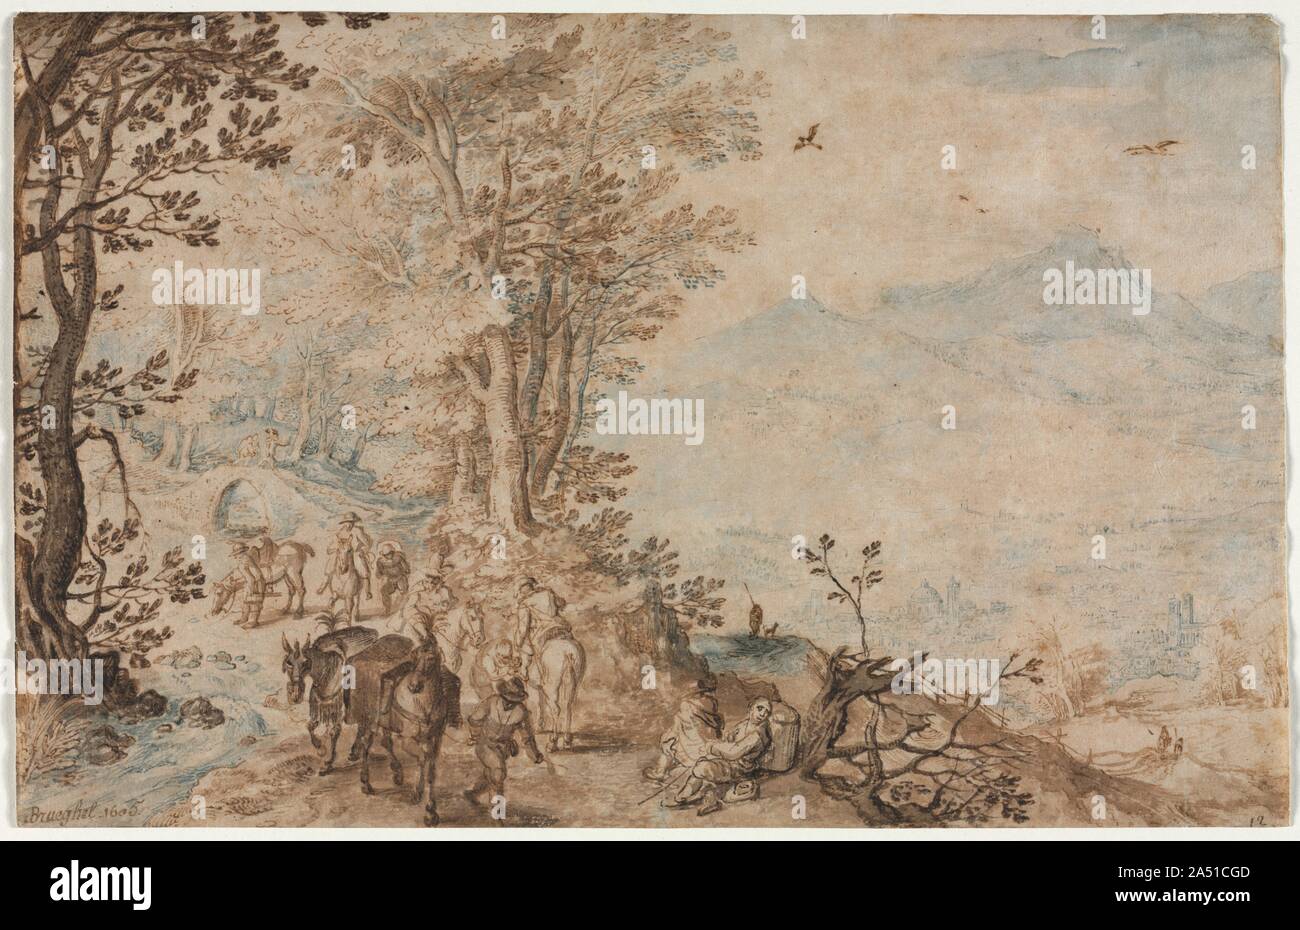 Paesaggio con i viaggiatori, 1605. Un figlio di Pieter Bruegel il Vecchio, Jan ha viaggiato in Italia nel 1590s e in seguito avuto una carriera di successo in Anversa, dove alla fine divenne pittore di corte agli Asburgo regents. Come un pittore, si è specializzato in floral nature morte e paesaggi, talvolta collaborando con il suo amico Peter Paul Rubens. I suoi disegni sono però quasi esclusivamente di paesaggi. Bruegel destinati a essere venduti come lavori indipendenti piuttosto che come studi preparatori per dipinti. La data di scadenza indicata nell'angolo in basso a sinistra di questo foglio può essere corretto, ma, insieme con il Foto Stock